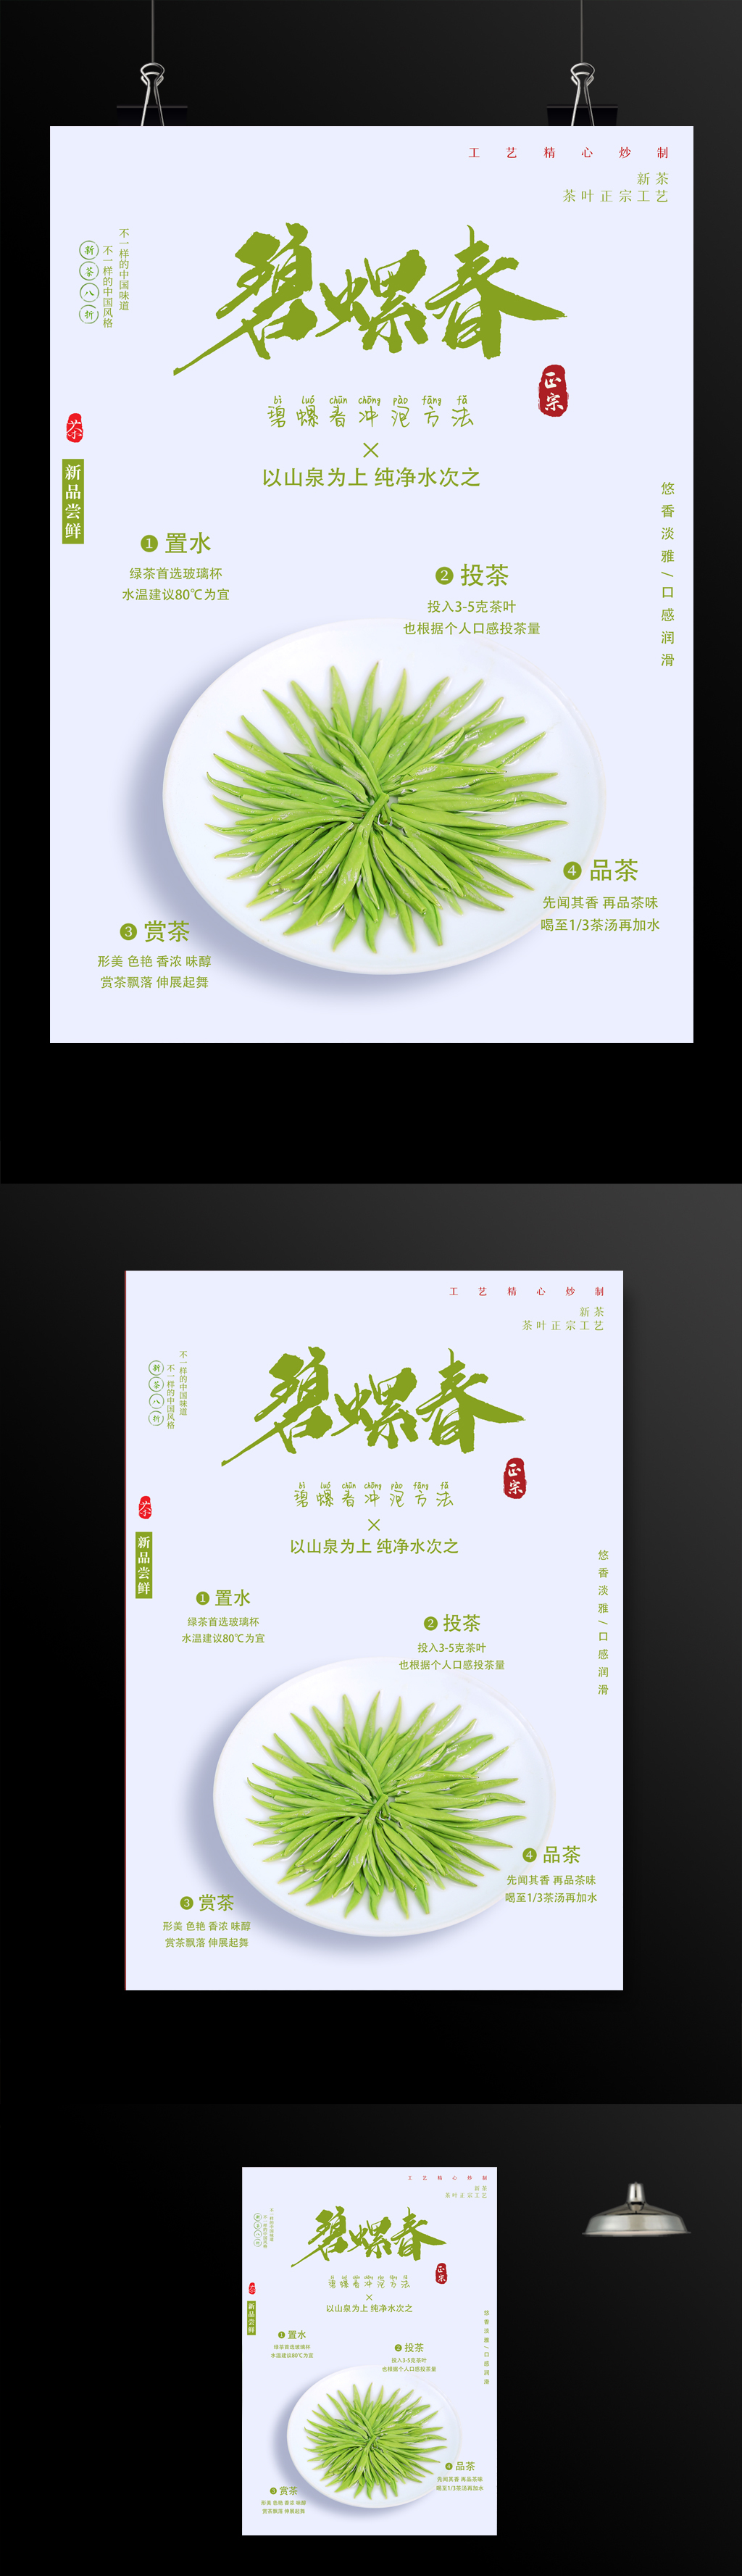 绿茶促销碧螺春宣传海报